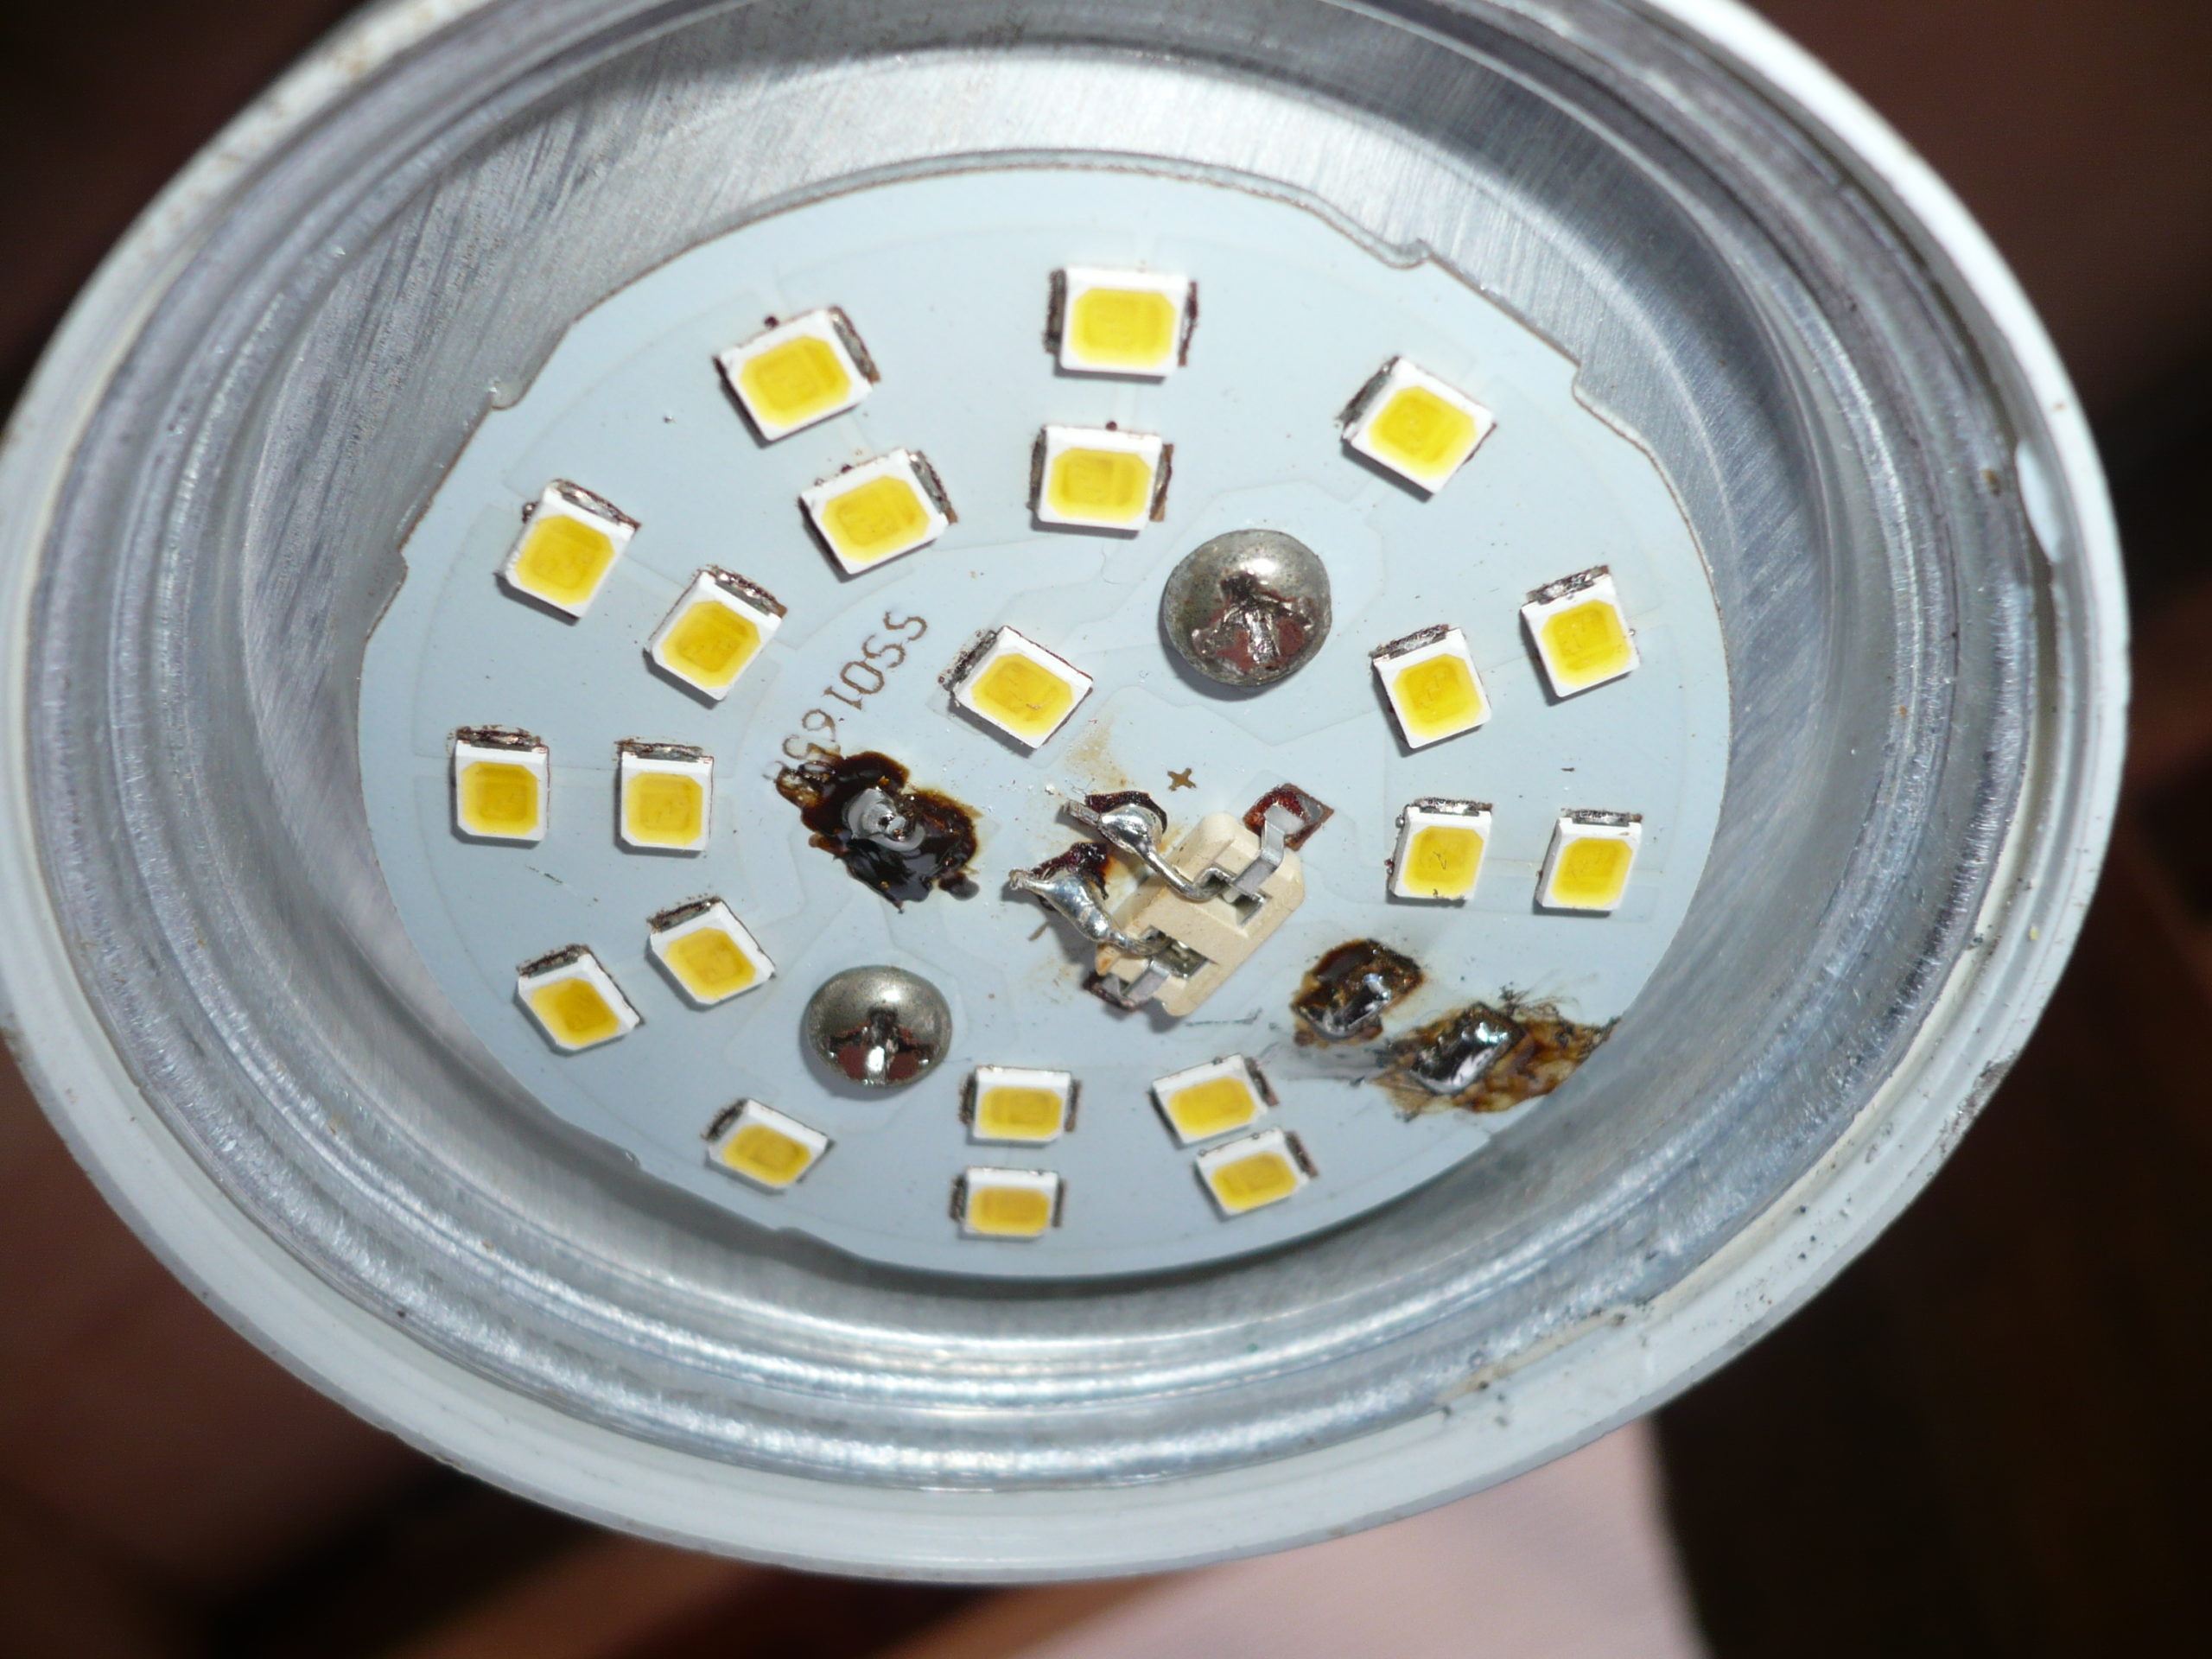 Светодиодные лампы своими руками 220. Отремонтировать диодную лампочку на 220 вольт. Отремонтировать светодиодную лампу 220 вольт. Светодиодная лампа 220 вольт разборка. Ремонтируем диодную лампочку 220 вольт.